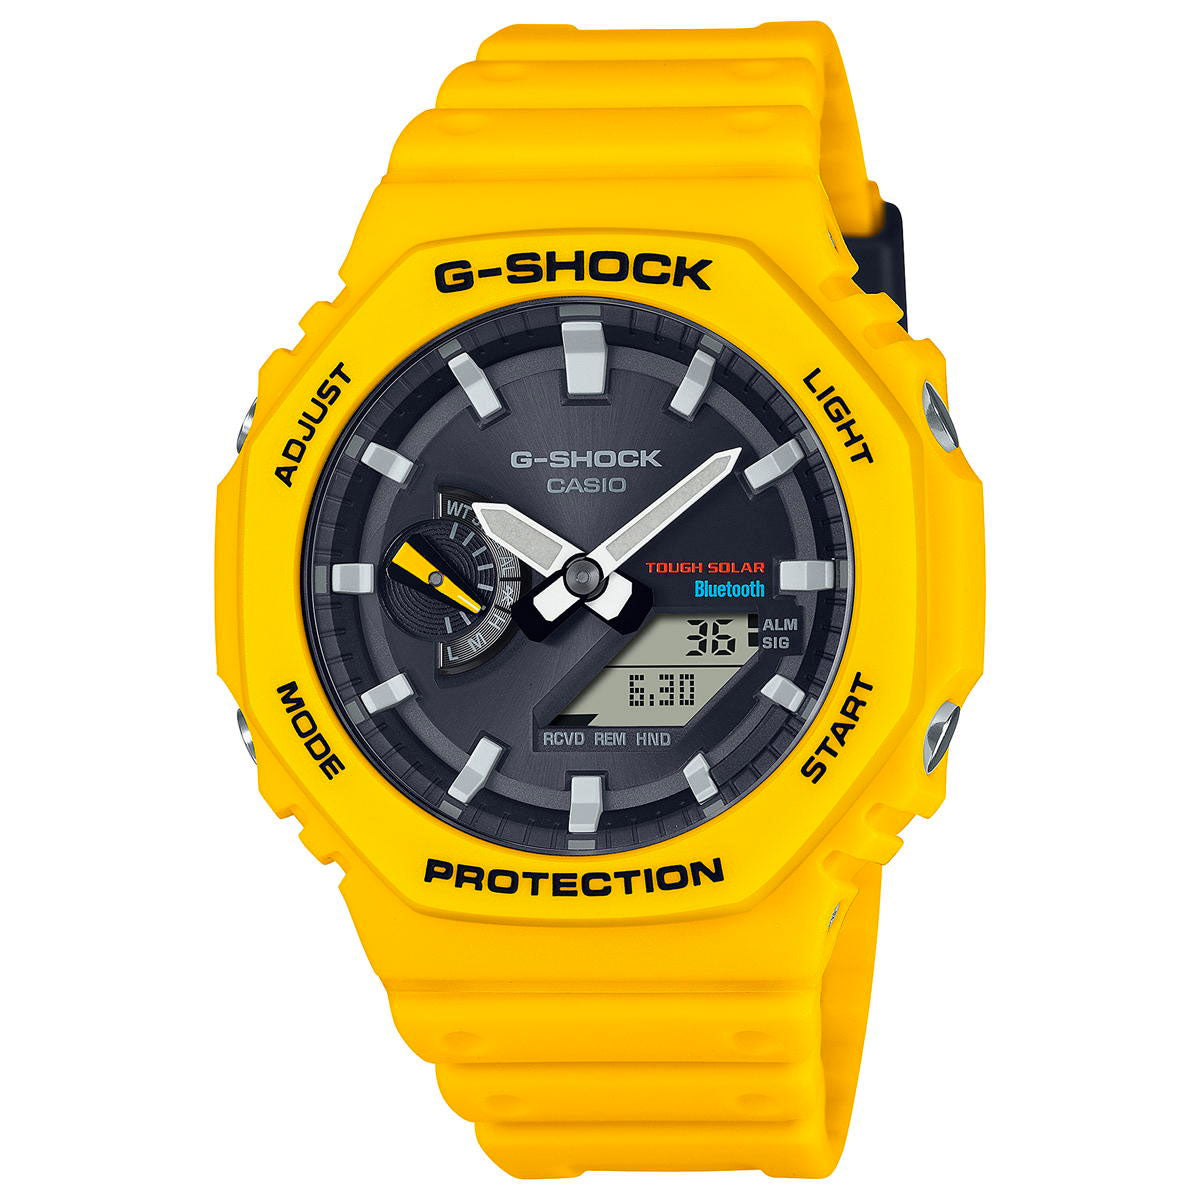 G-SHOCK ソーラー カシオ Gショック CASIO 腕時計 メンズ GA-B2100C-9AJF タフソーラー スマートフォンリンク イエロー